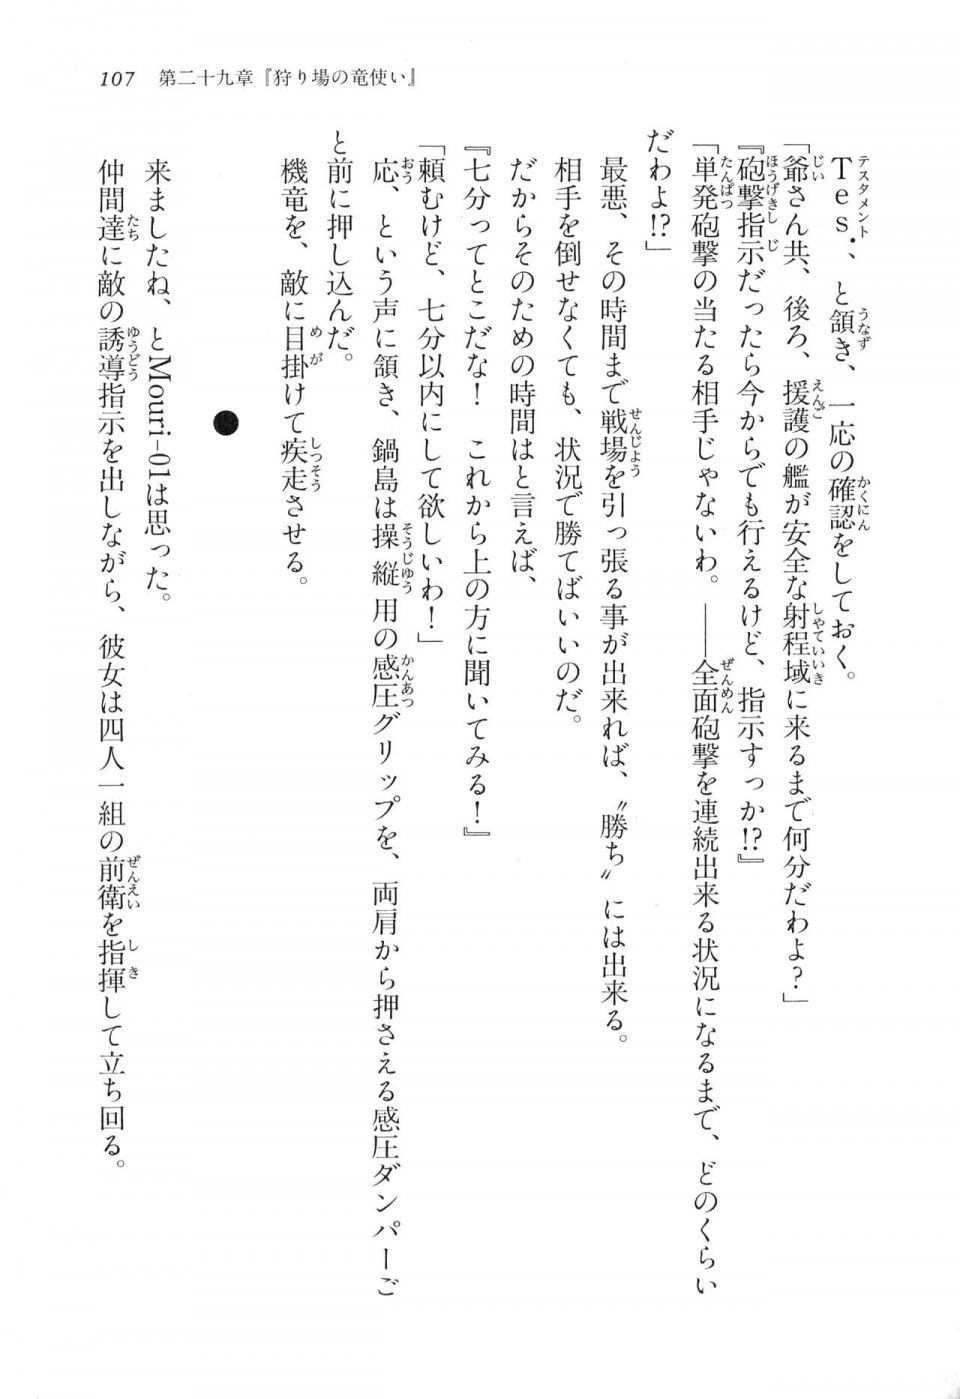 Kyoukai Senjou no Horizon LN Vol 17(7B) - Photo #107